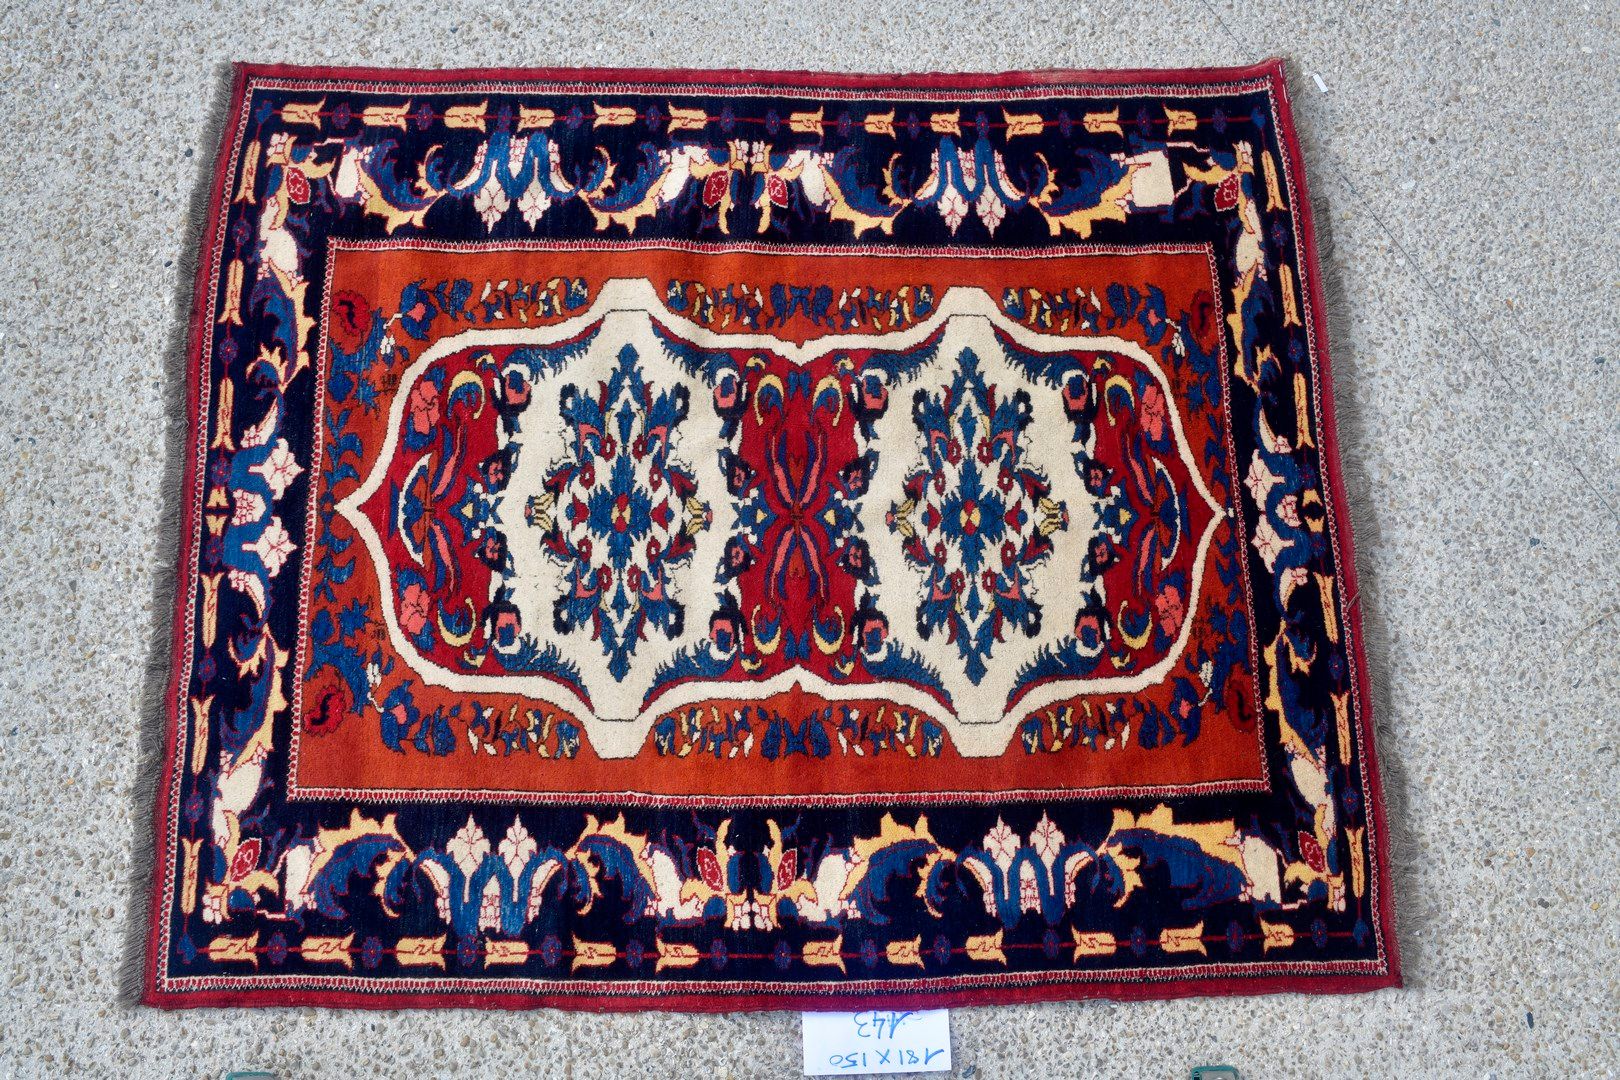 Null 加兹尼-土库曼人，约1980年。

羊毛基础上的羊毛丝绒。

红宝石场地上有双重几何徽章，镶嵌着普鲁士蓝、金黄色和鲑鱼粉的枝叶，呈钻石状。

状况良好&hellip;